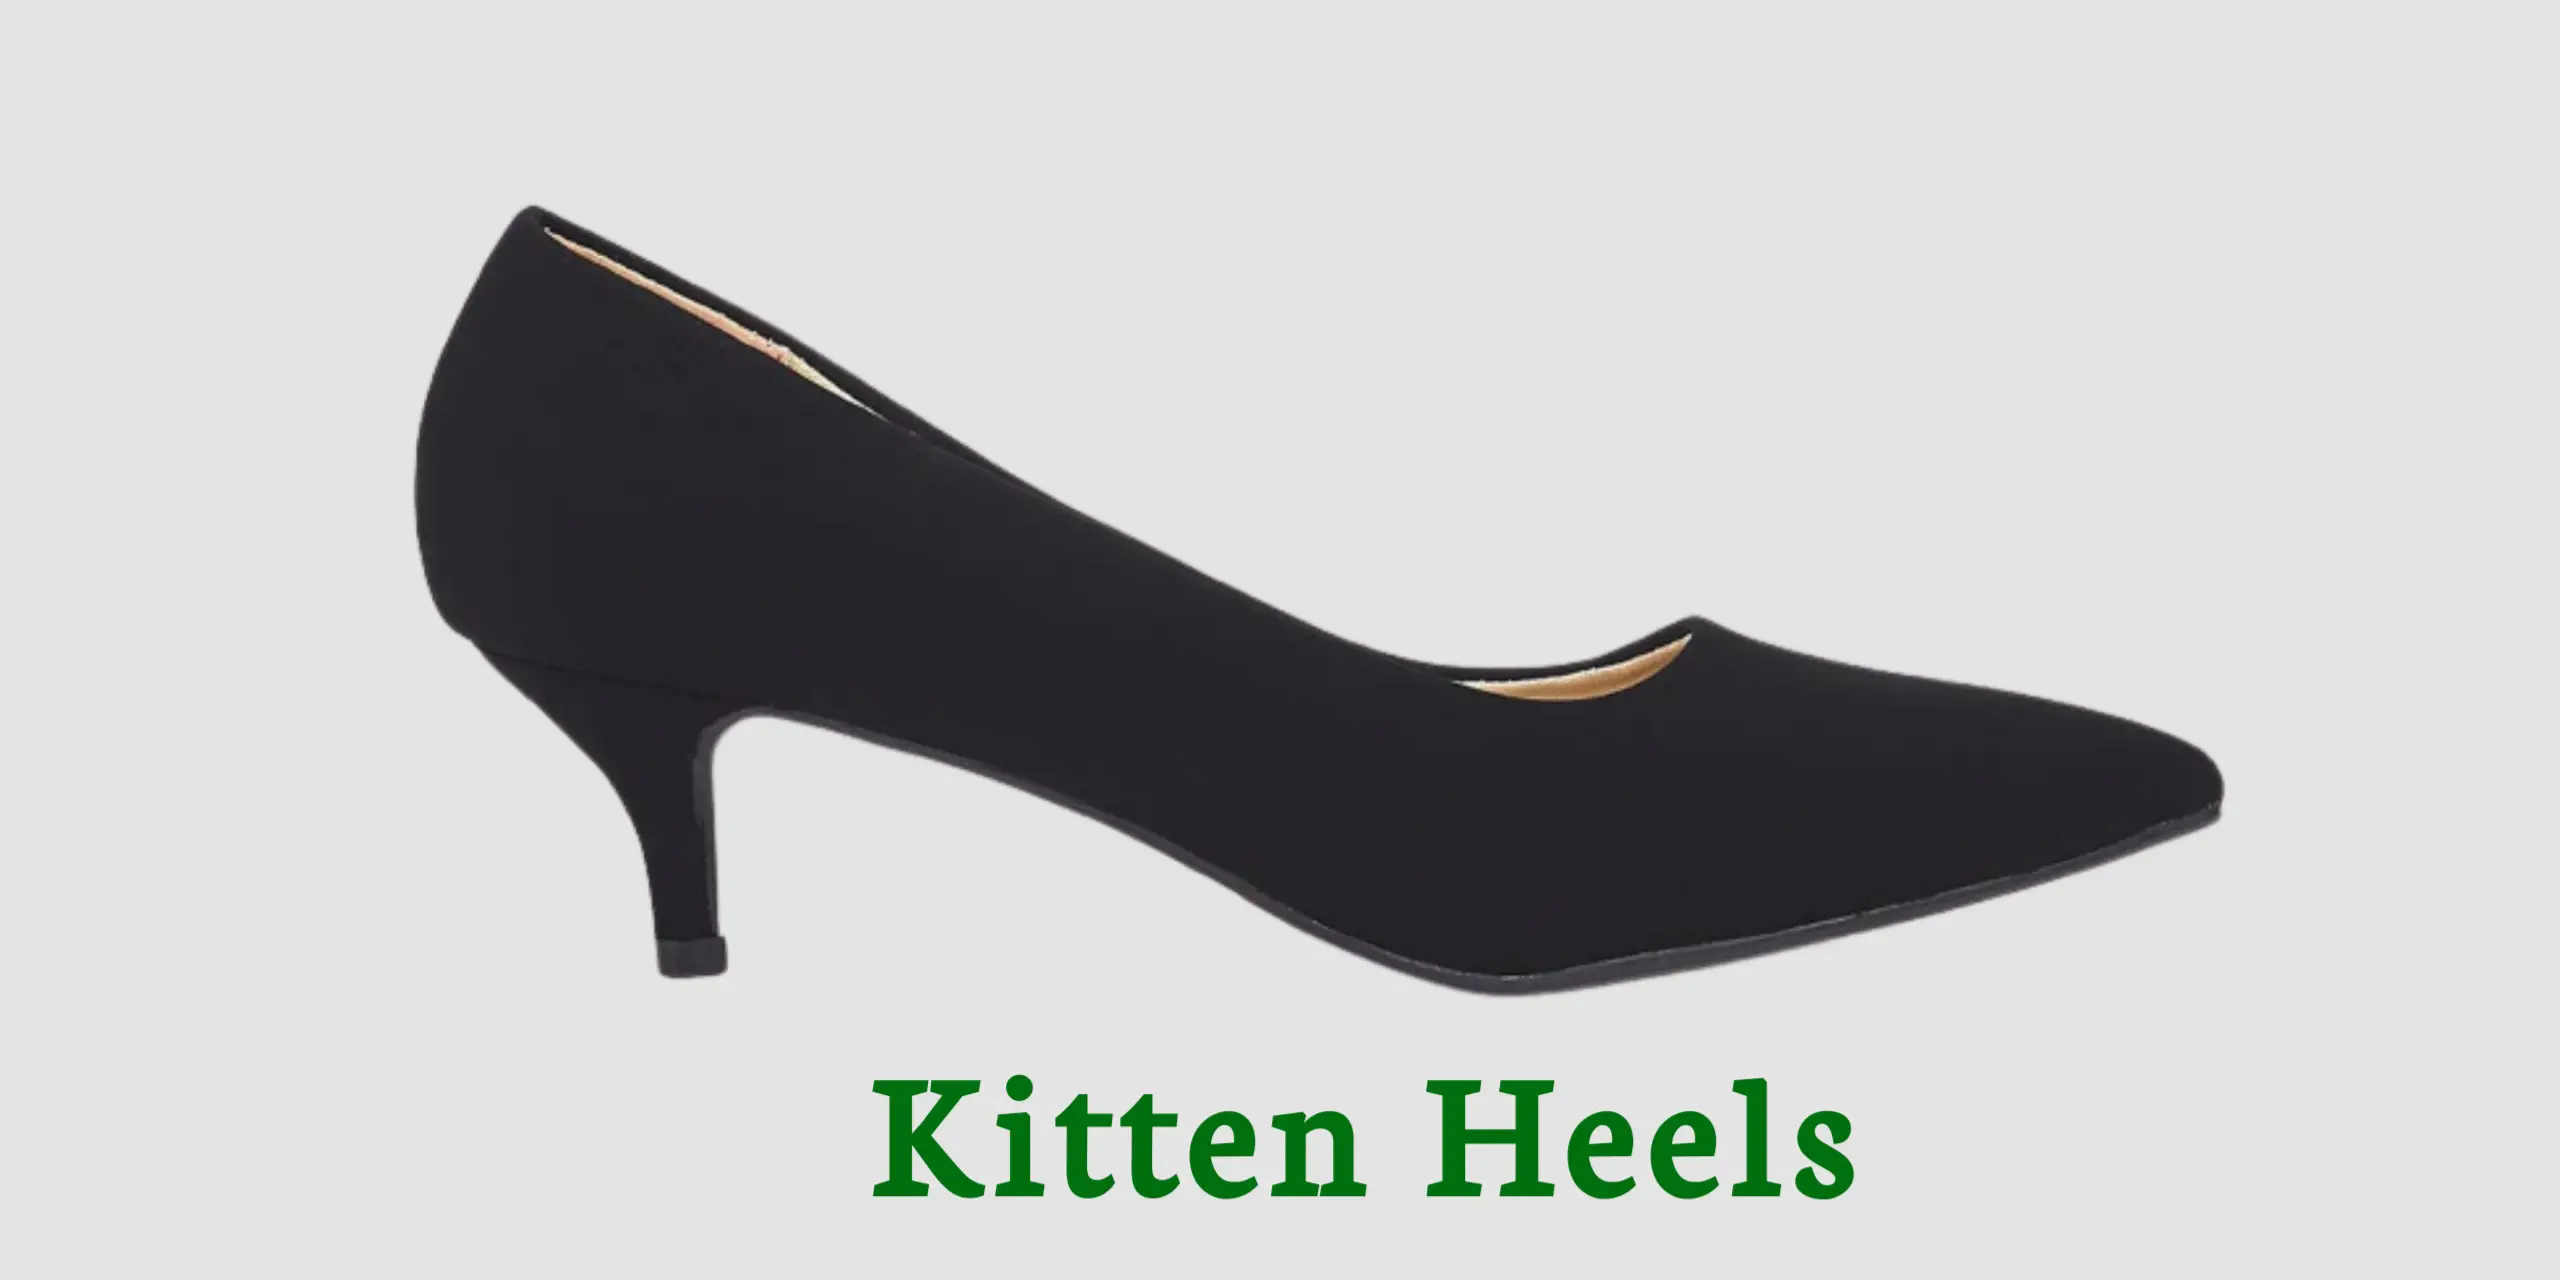 Stilettos vs Pumps vs Kitten Heels 